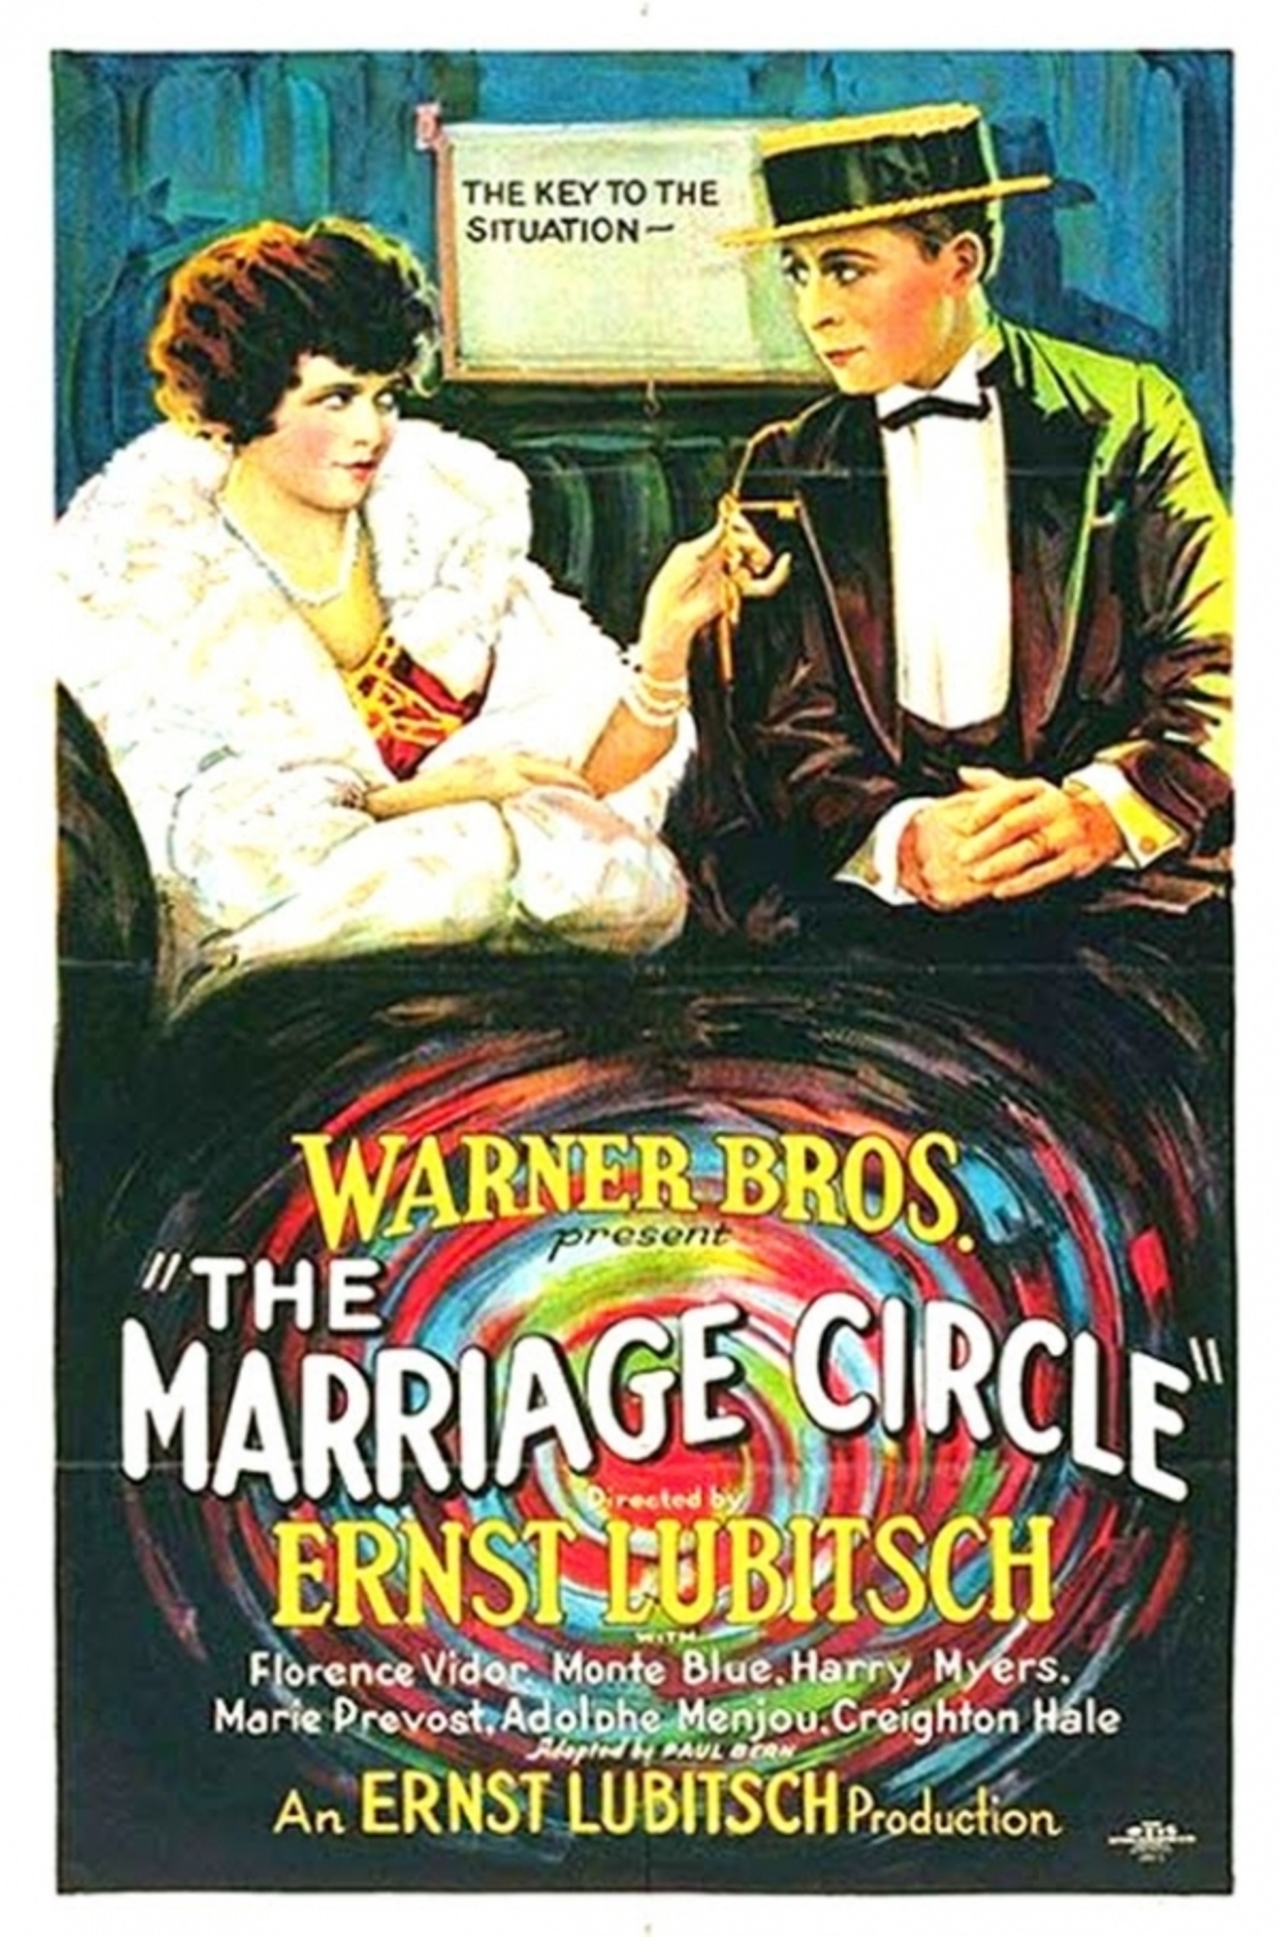 Film poster for Ernst Lubitsch